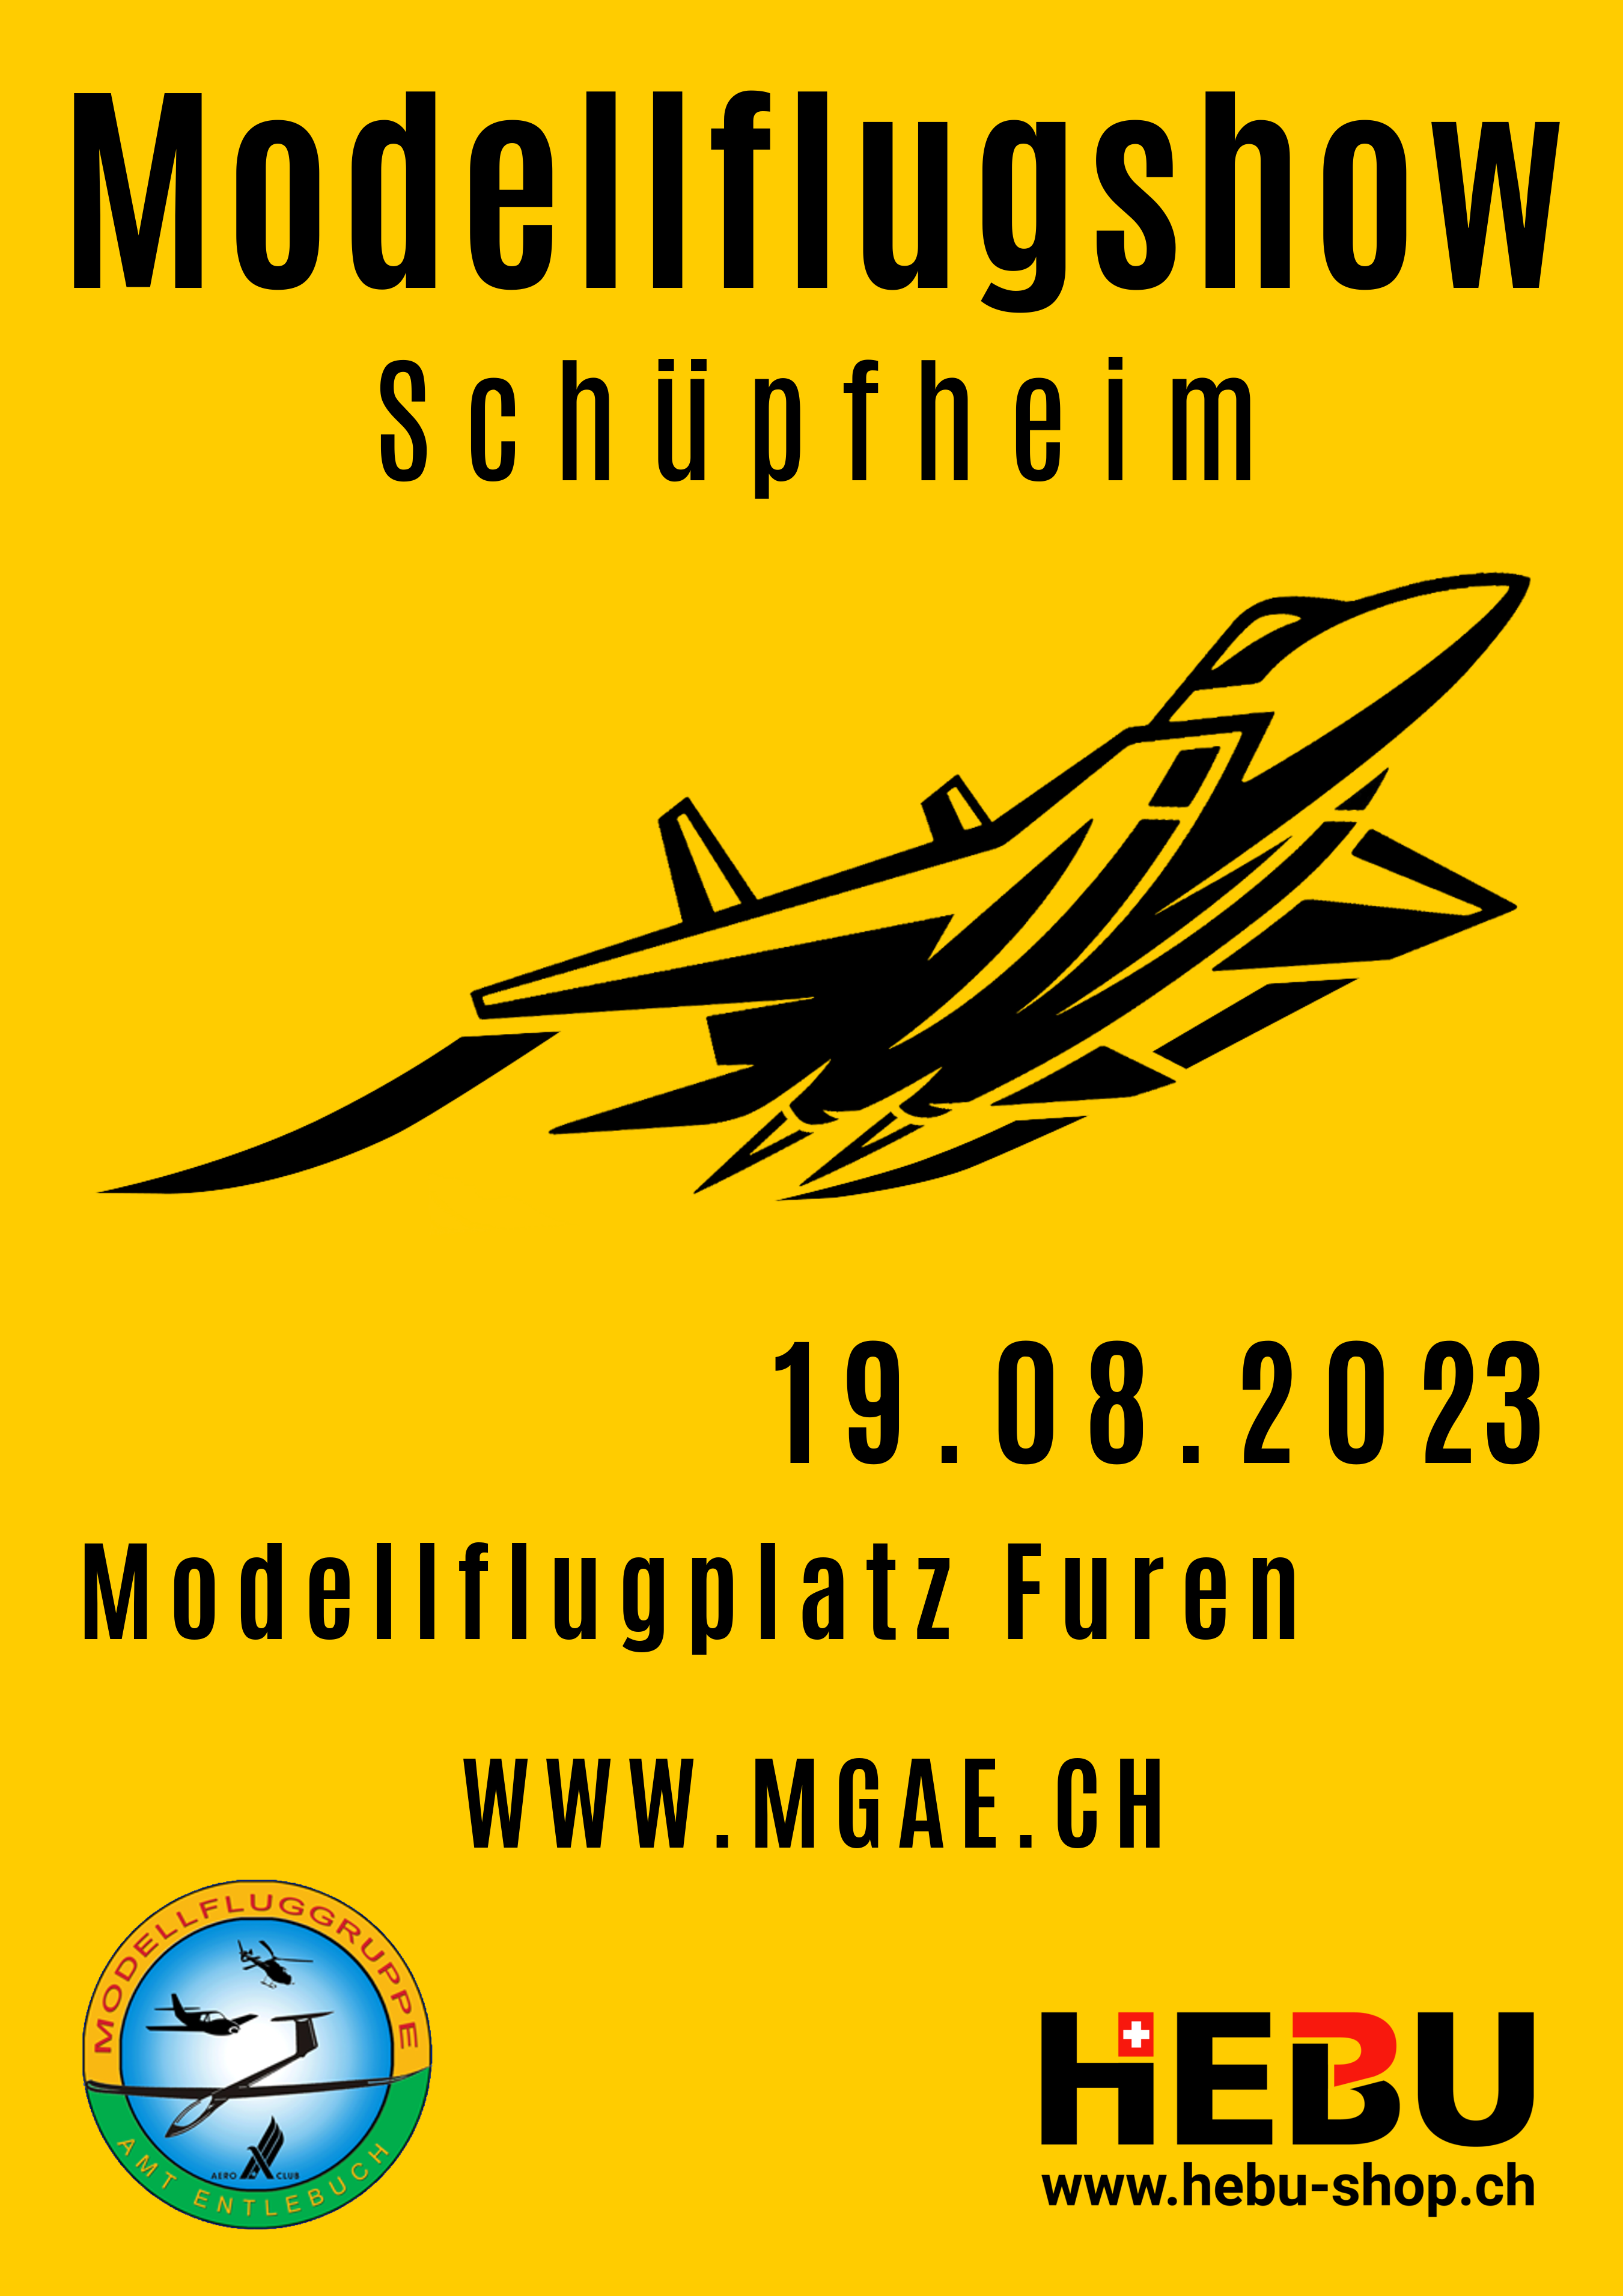 Modellflugshow Schüpfheim 